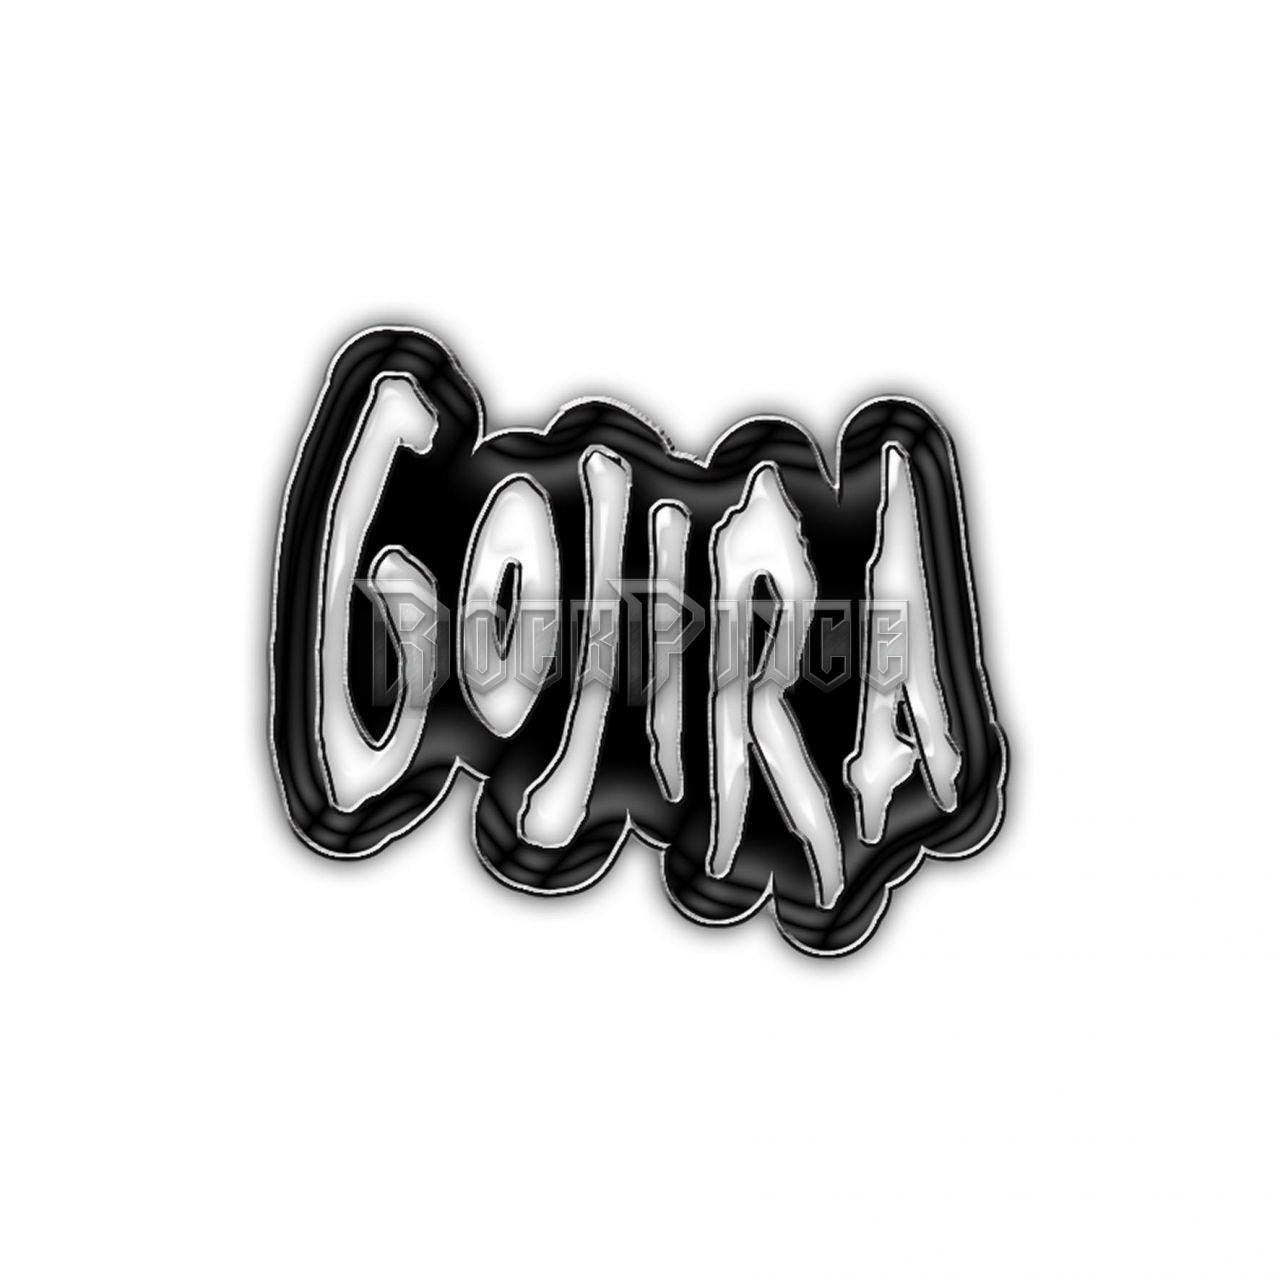 GOJIRA - LOGO - kitűző / fémjelvény - PB108